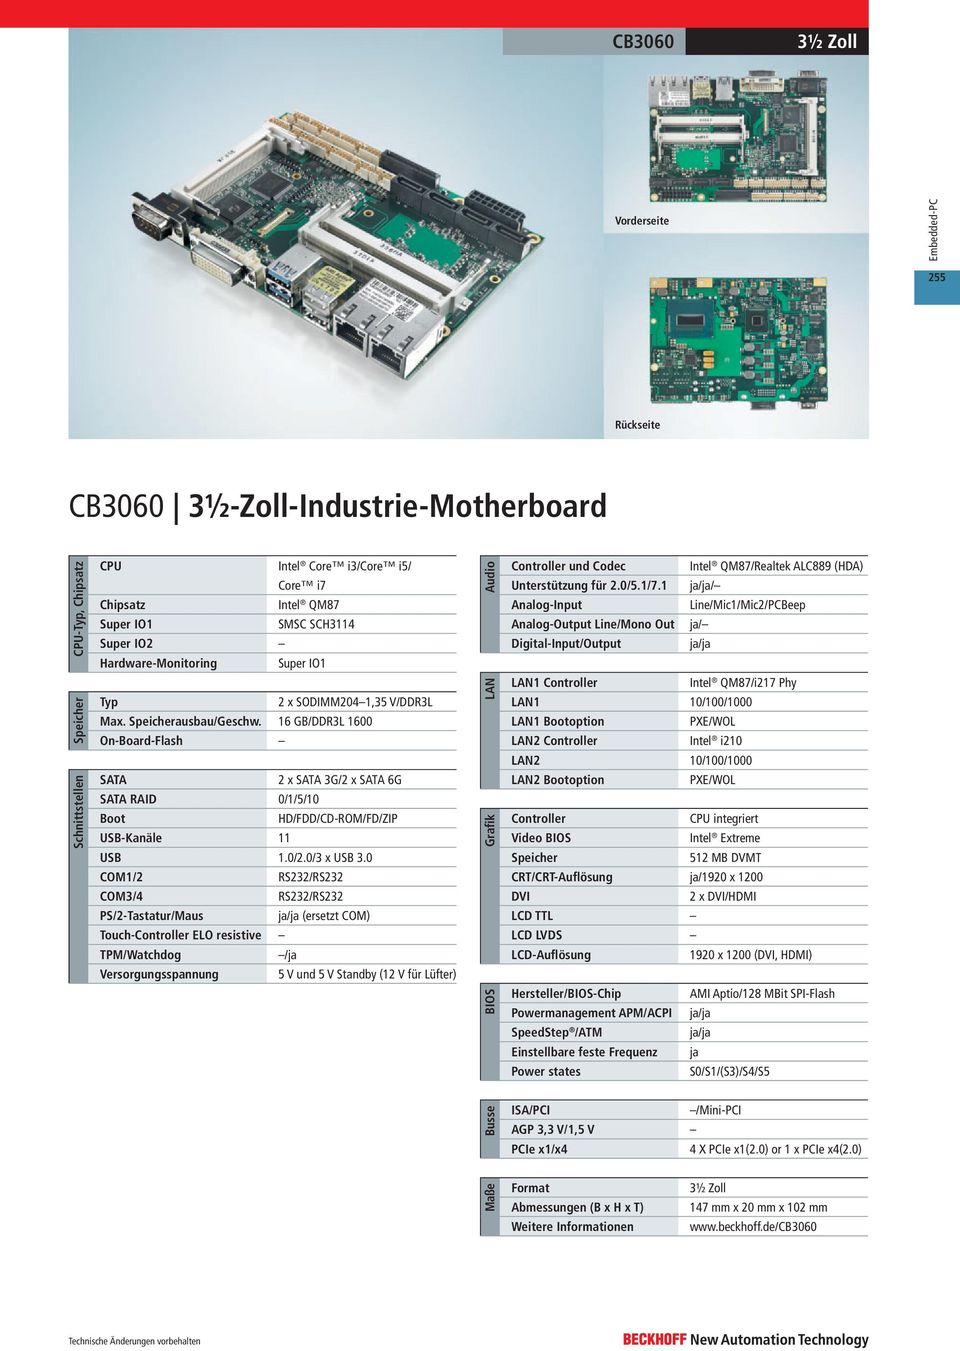 0 COM3/4 (ersetzt COM) Touch- ELO resistive Versorgungsspannung 5 V und 5 V Standby (12 V für Lüfter) und Codec Intel QM87/Realtek ALC889 (HDA) Unterstützung für 2.0/5.1/7.